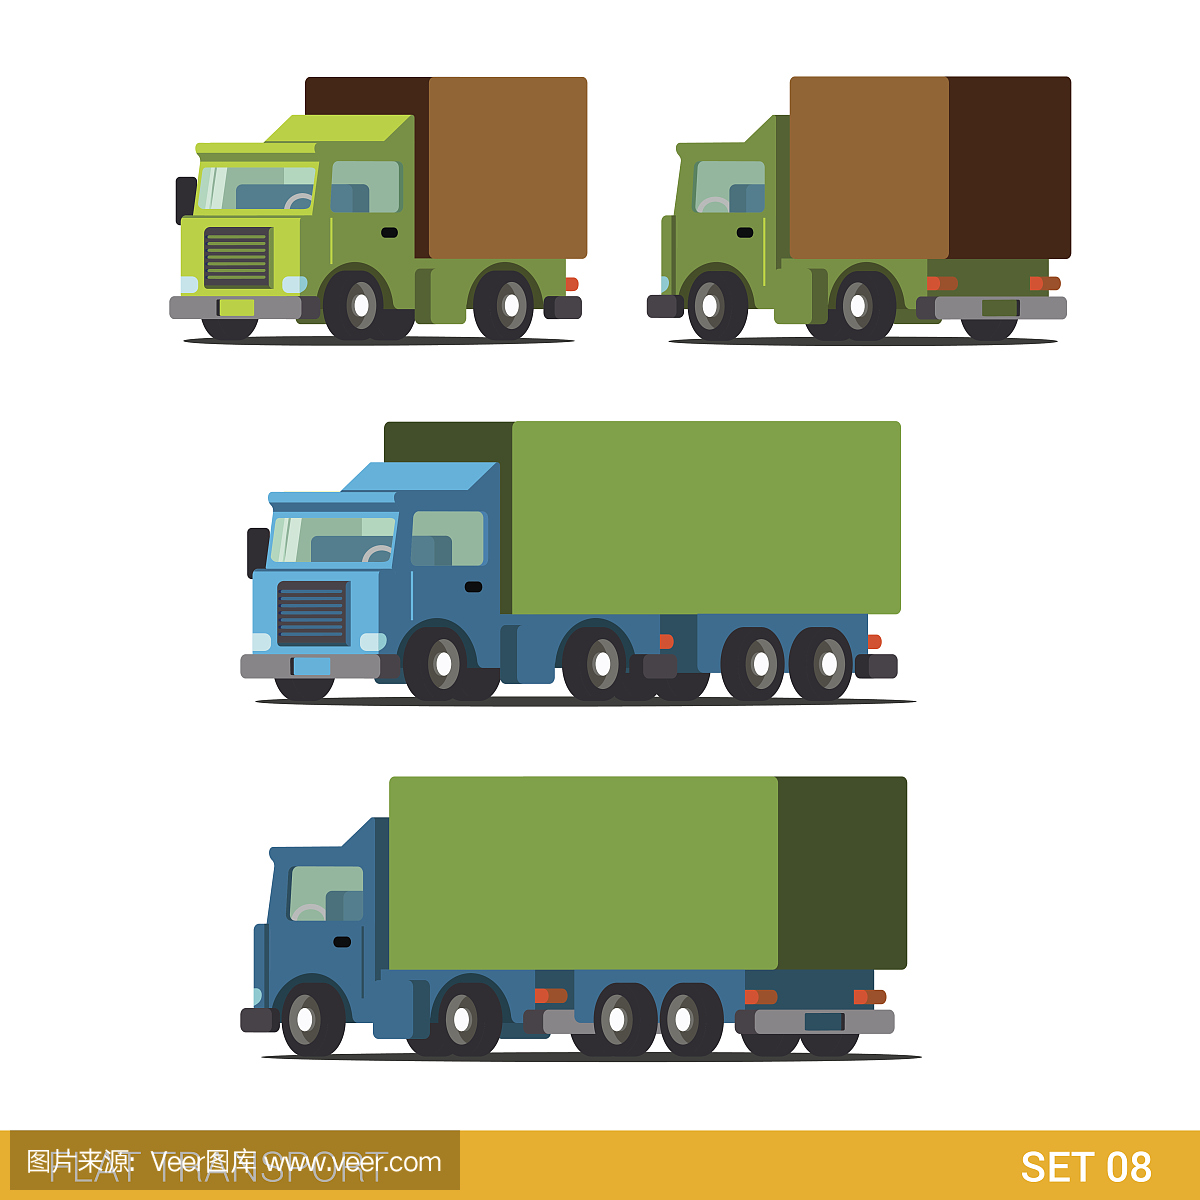 平面3d等距高质量滑稽的货物交付道路运输图标集。卡车,货车,汽车,货车。建立你自己的世界网络信息图表收集。